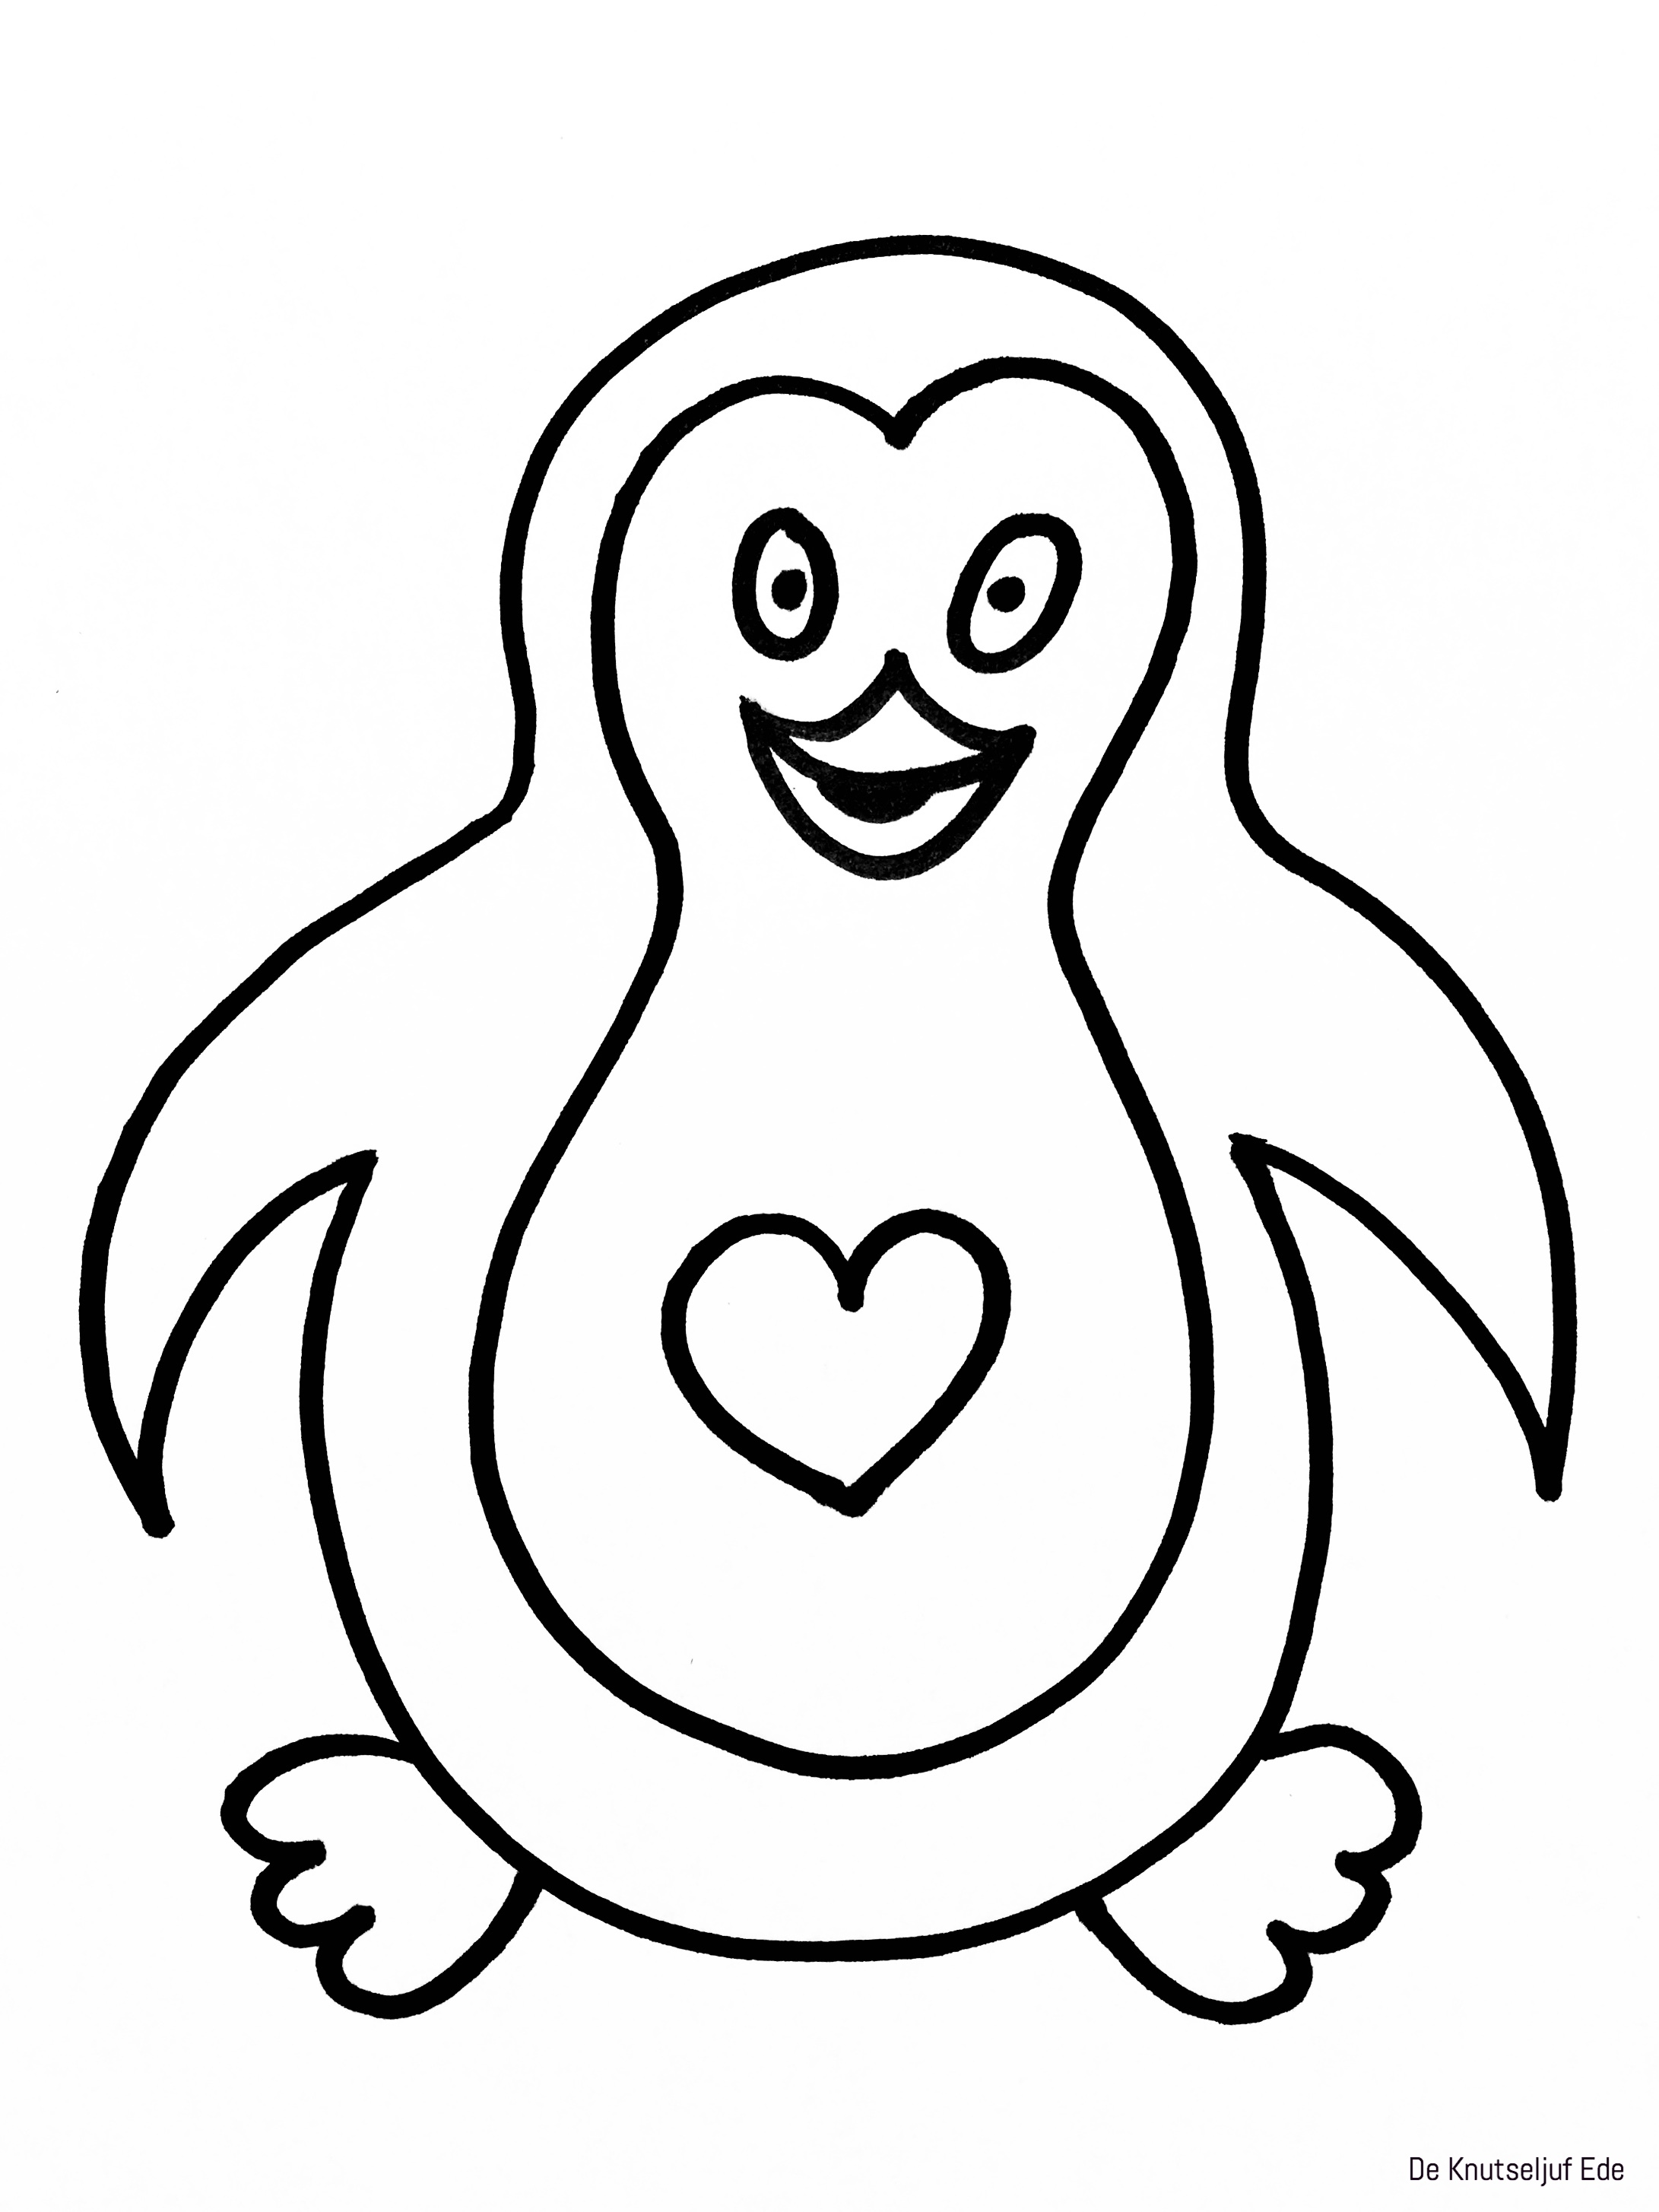 Пингвин раскраска для детей цветные Веселые